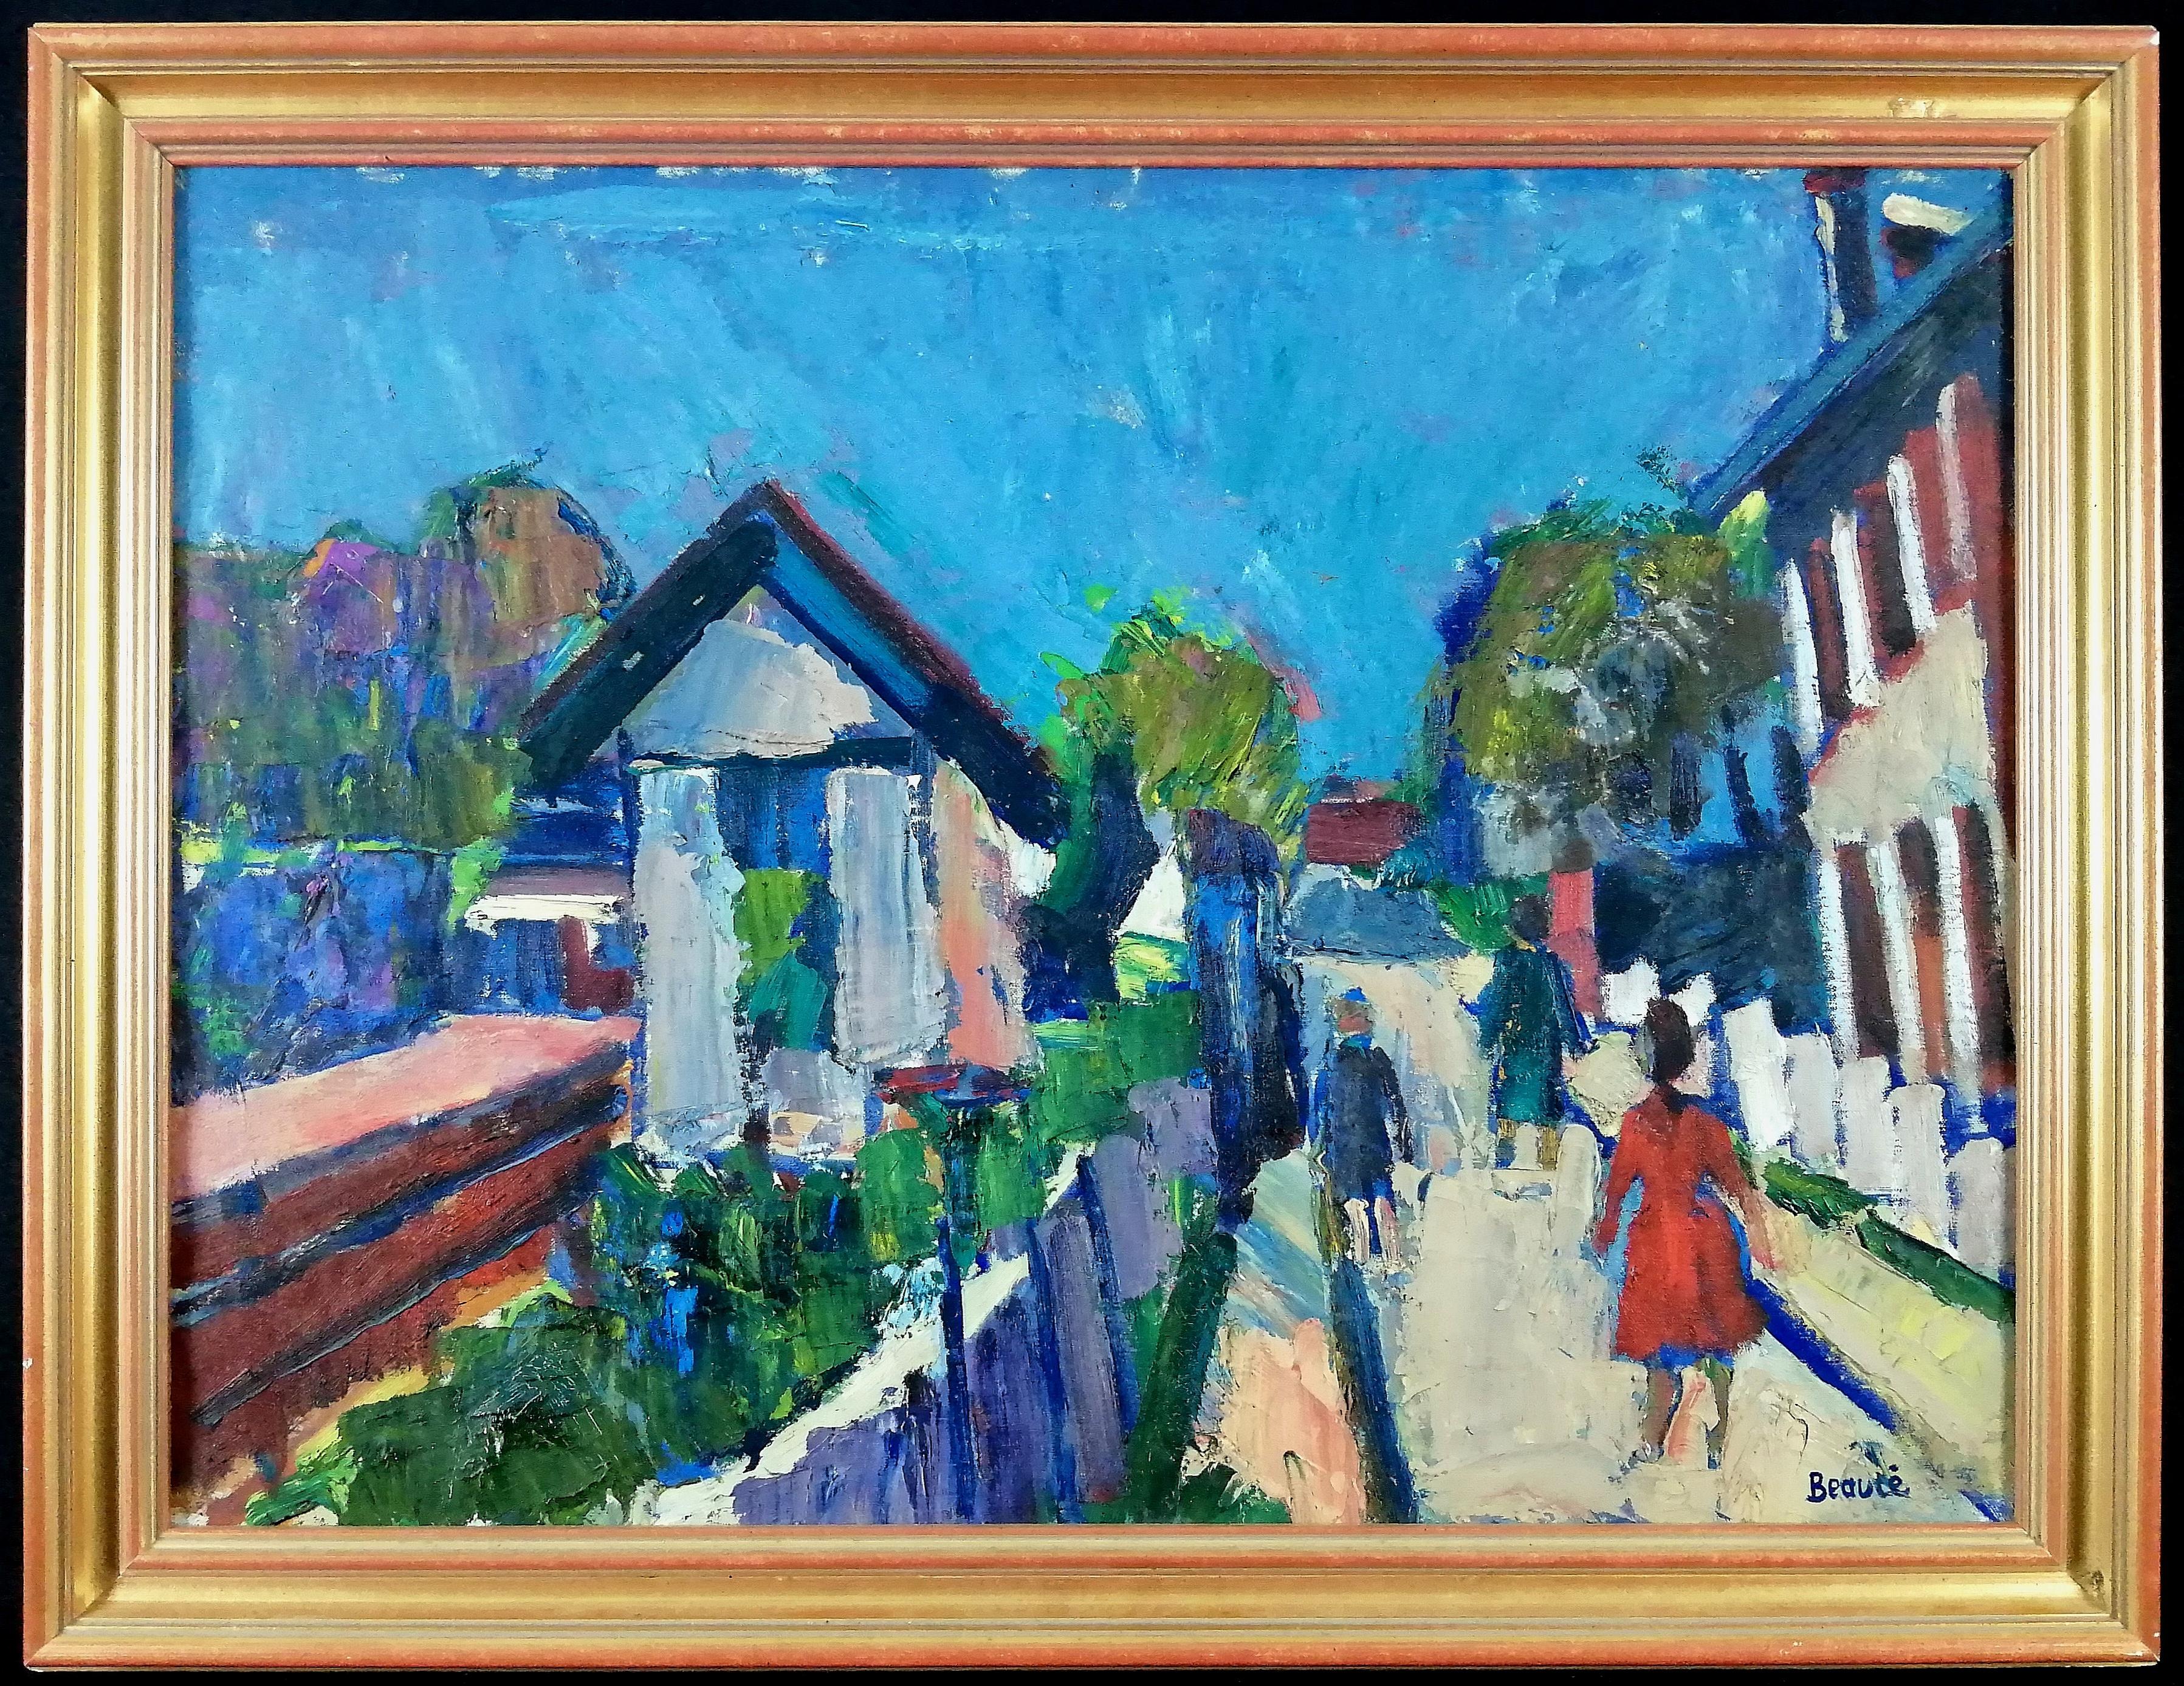 Landscape Painting André Beaucé - Promenade de l'après-midi - Peinture de paysage expressionniste français du milieu du siècle 1950